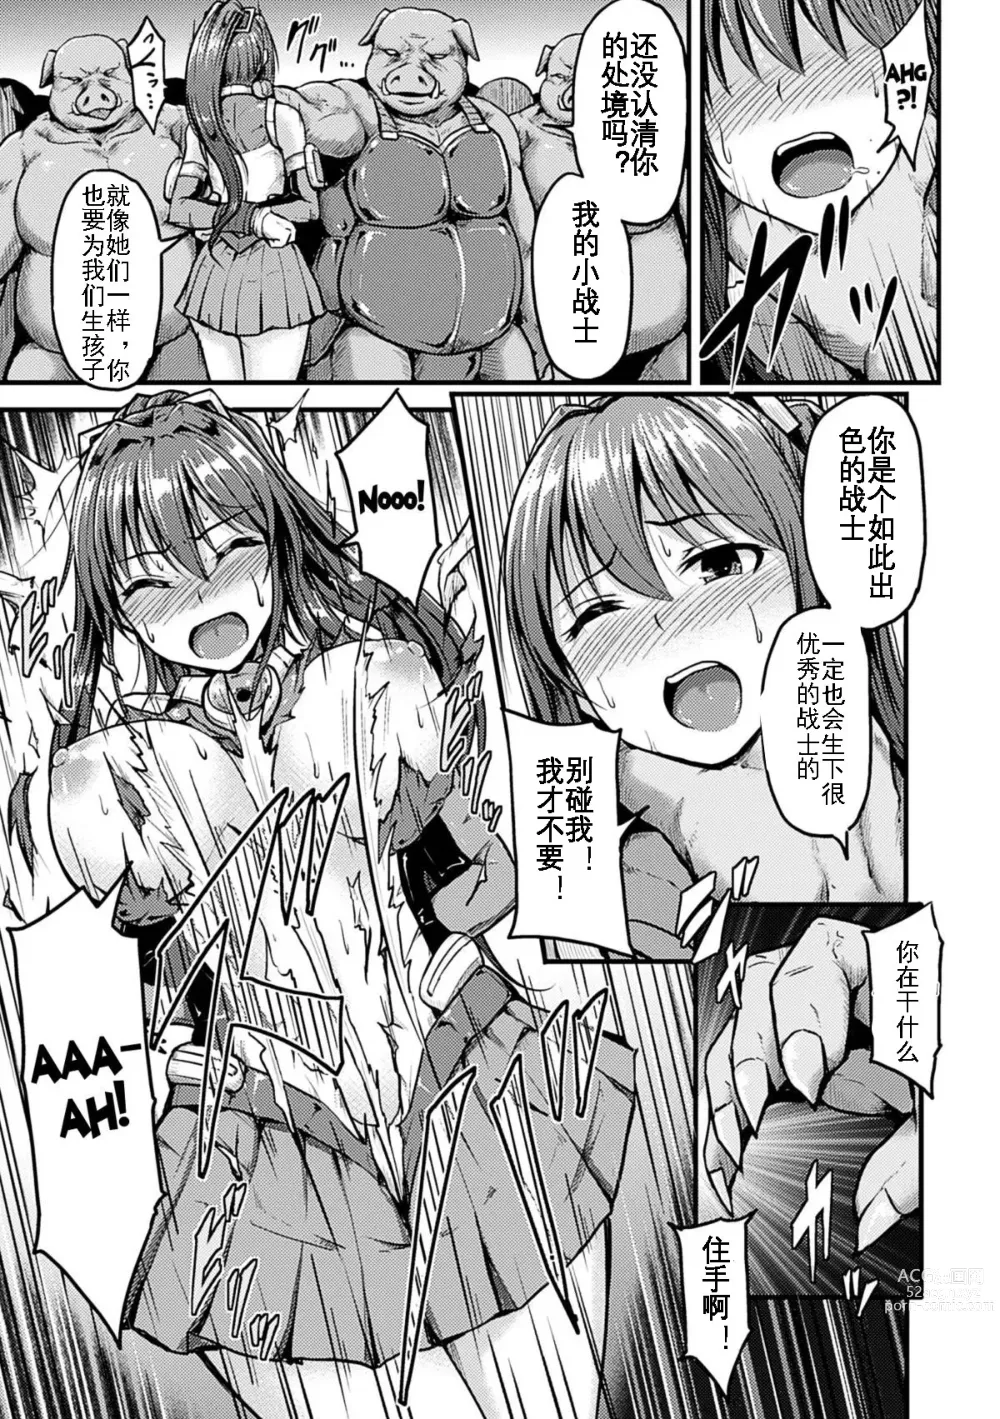 Page 8 of manga Irisraker Buta no Ko o Haramu Seigi no Senshi